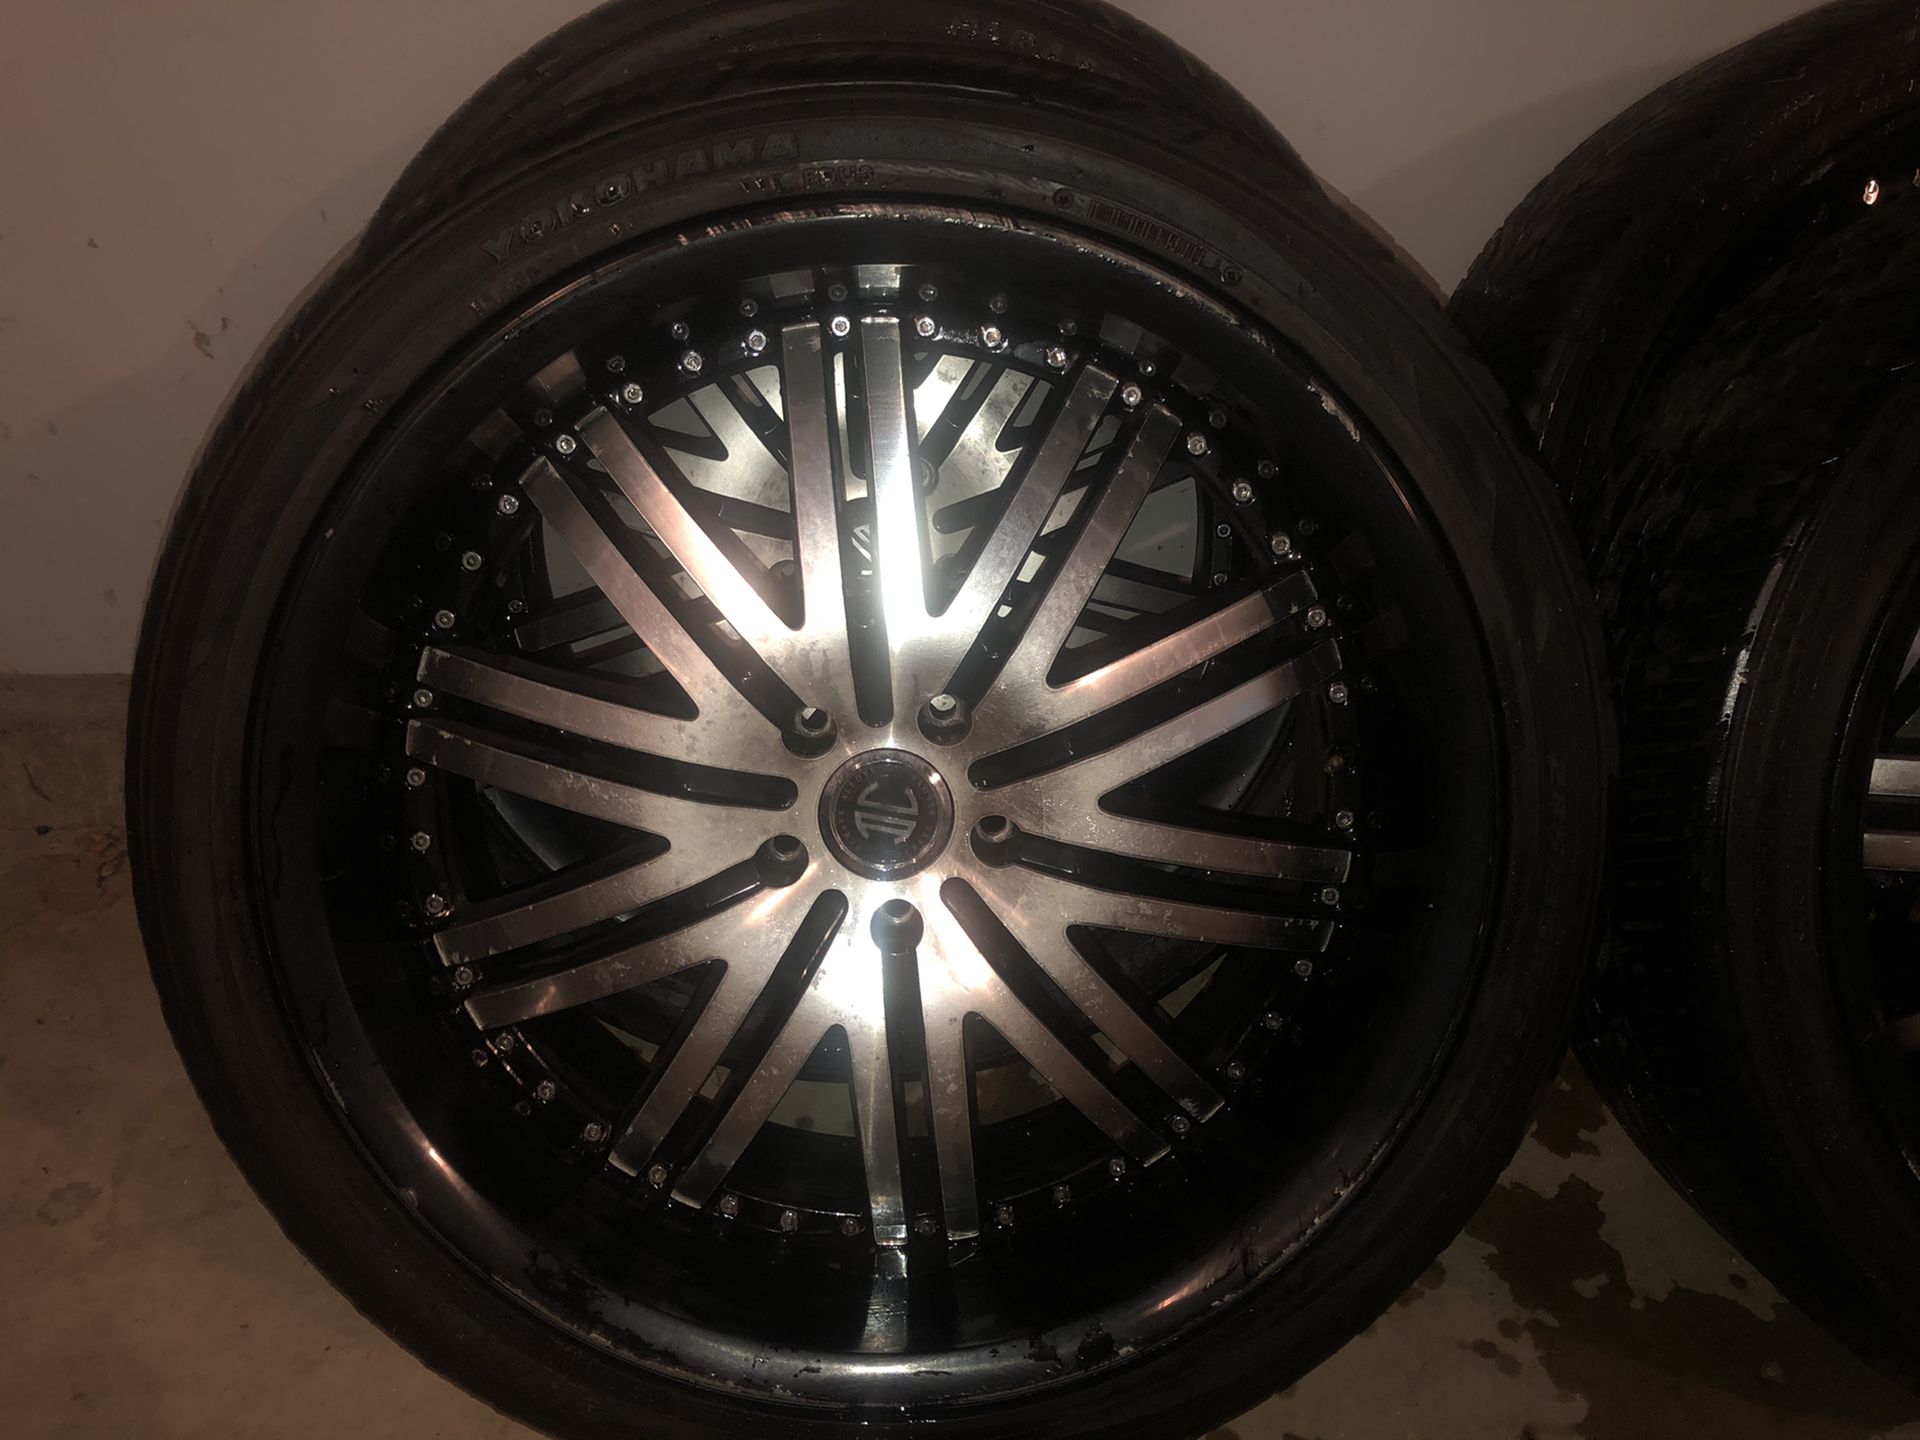 22” alloy wheels / crave alloy with Yokohama tires